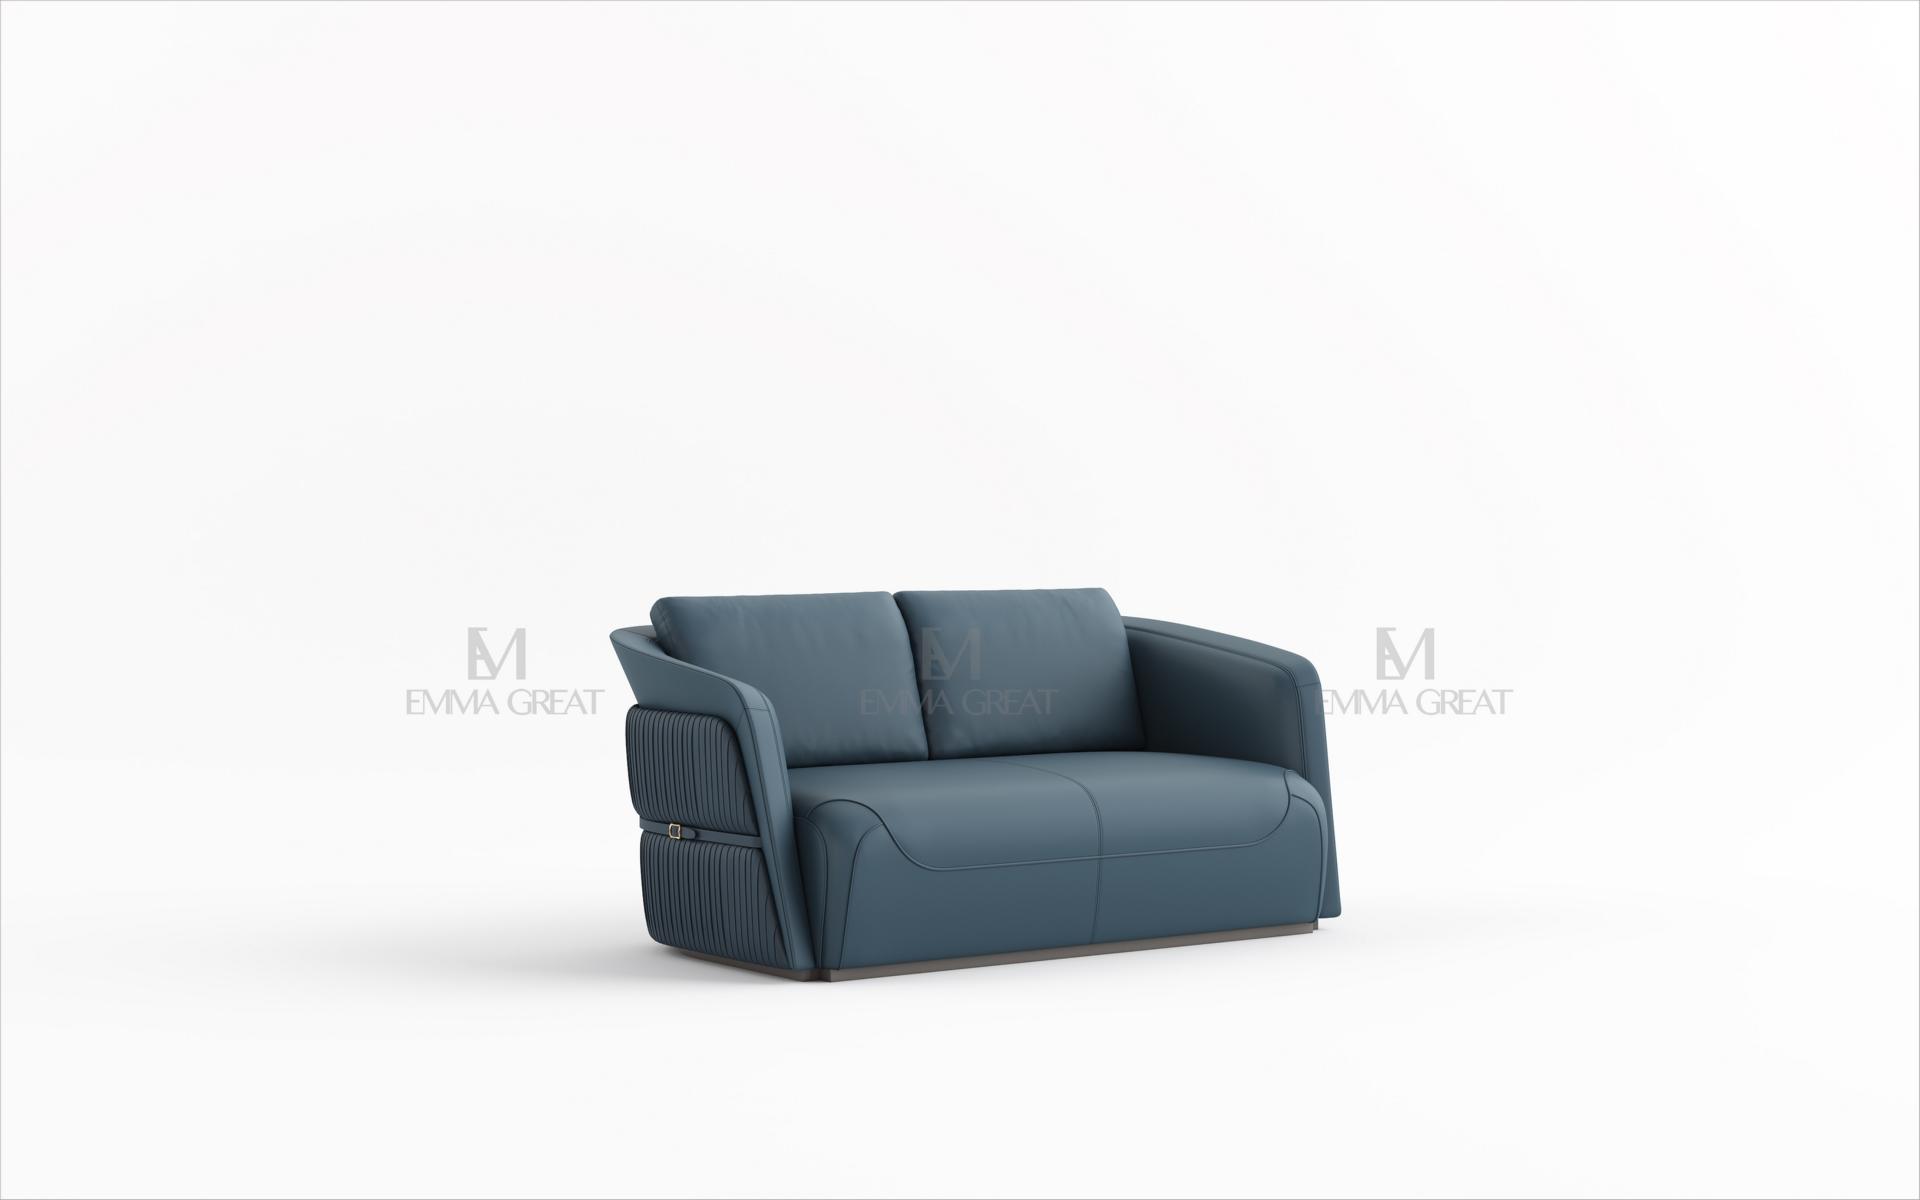 Zweisitzer Design Sofa 2 Sitzer Couch Polster Garnitur Sofas Couch Blau Luxus